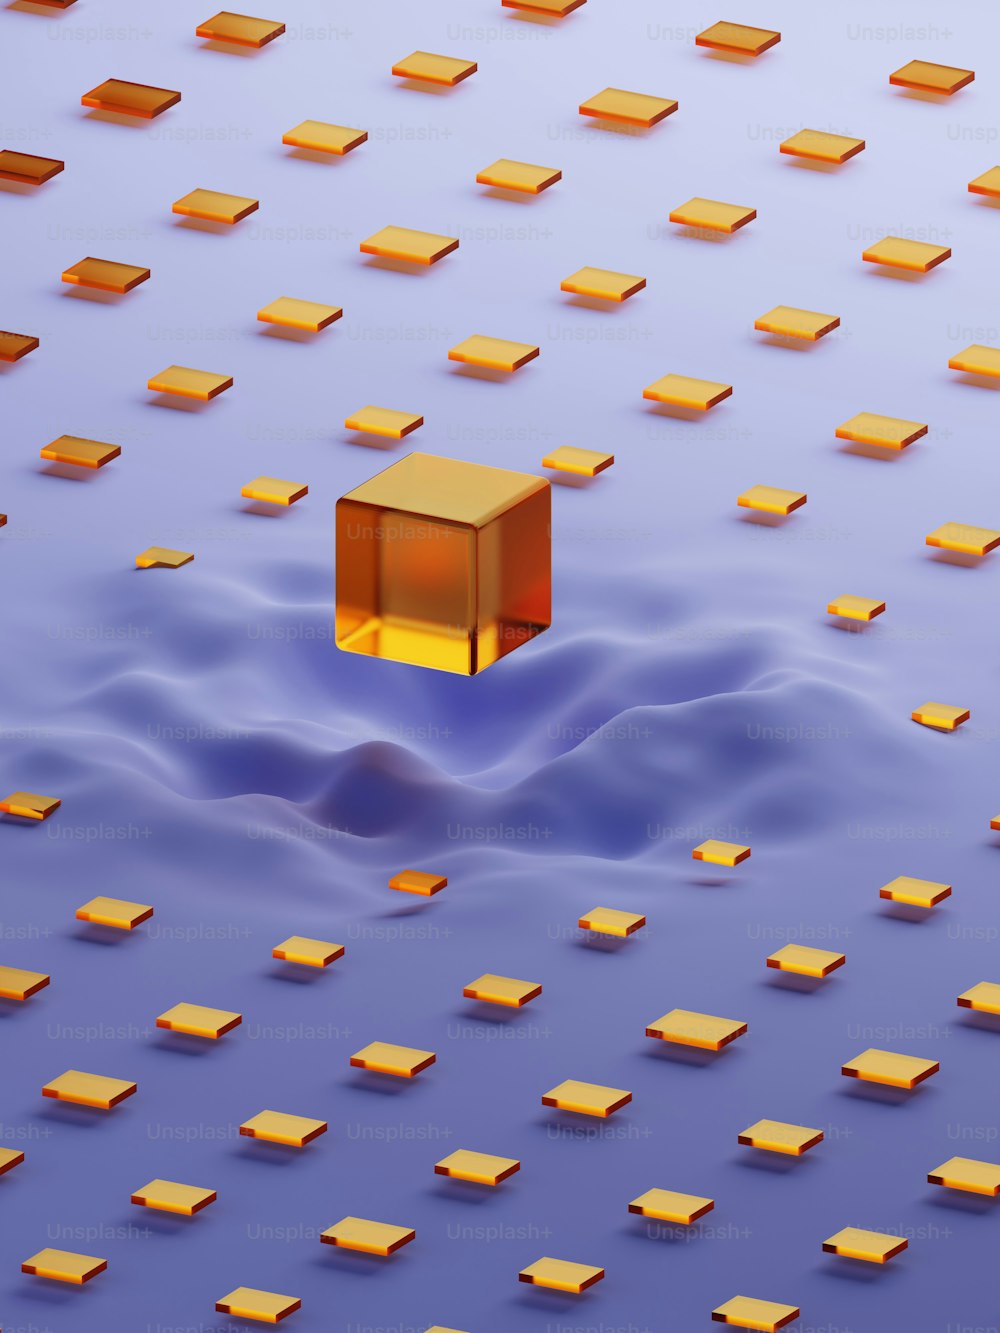 Un objeto cuadrado flotando en medio de un cuerpo de agua